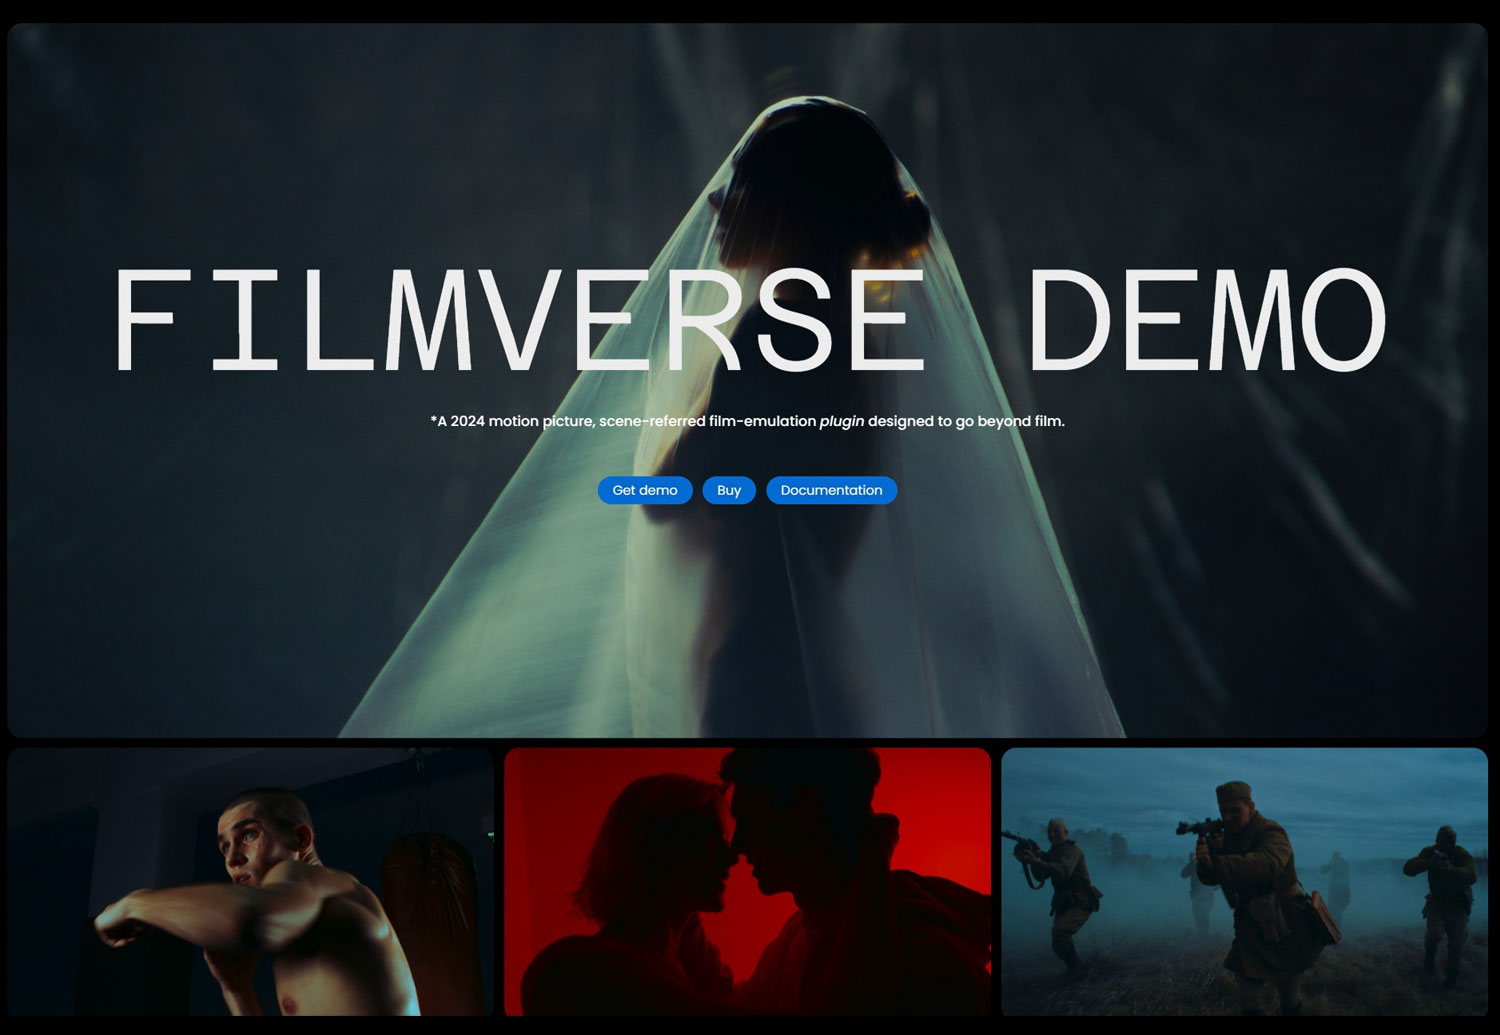 好莱坞电影感柯达Vision3胶片仿真模拟DCTL插件演示版 FilmVerse Demo Plugin , 第1张